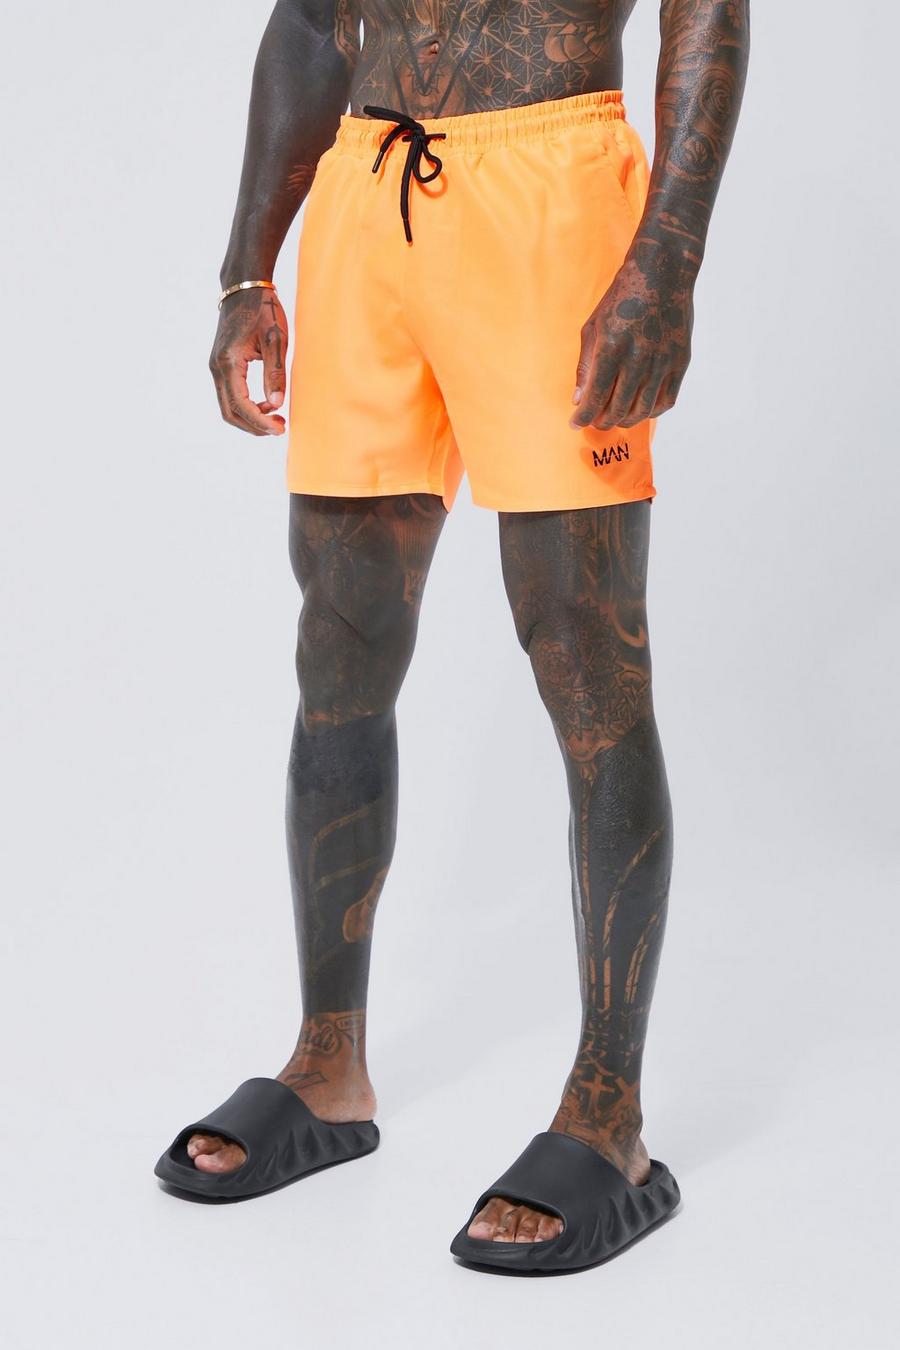 Bañador MAN Original de largo medio, Neon-orange arancio